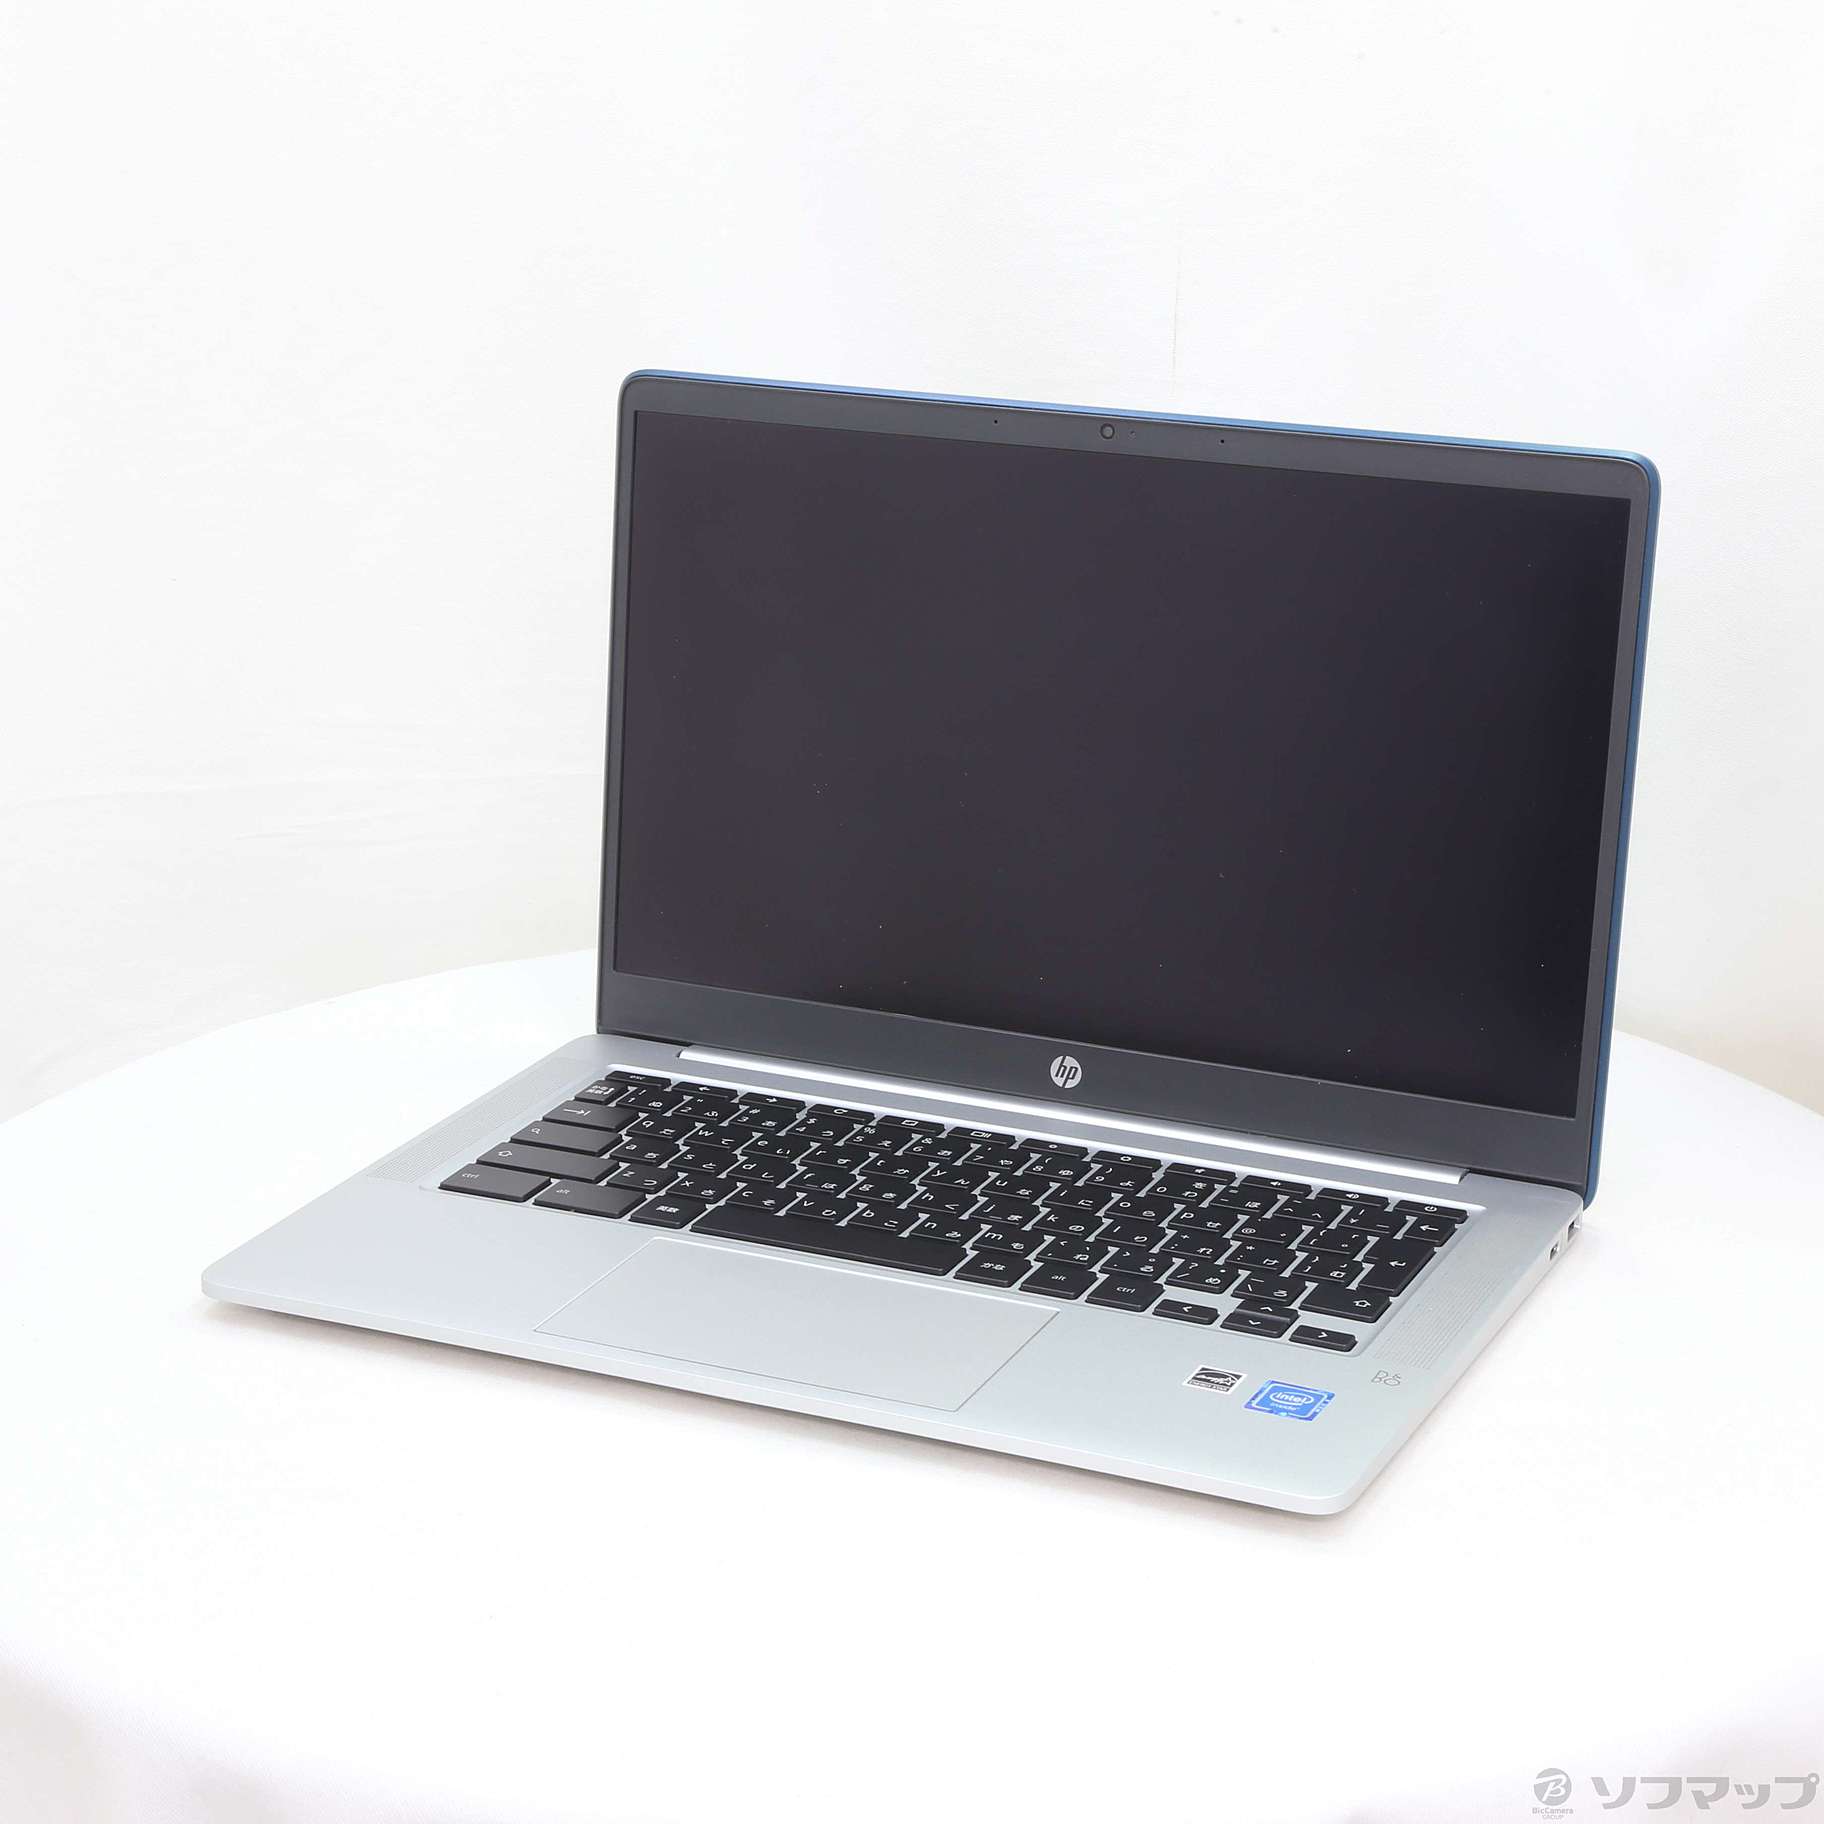 Chromebook HP ノートパソコン 14a-na0004TU